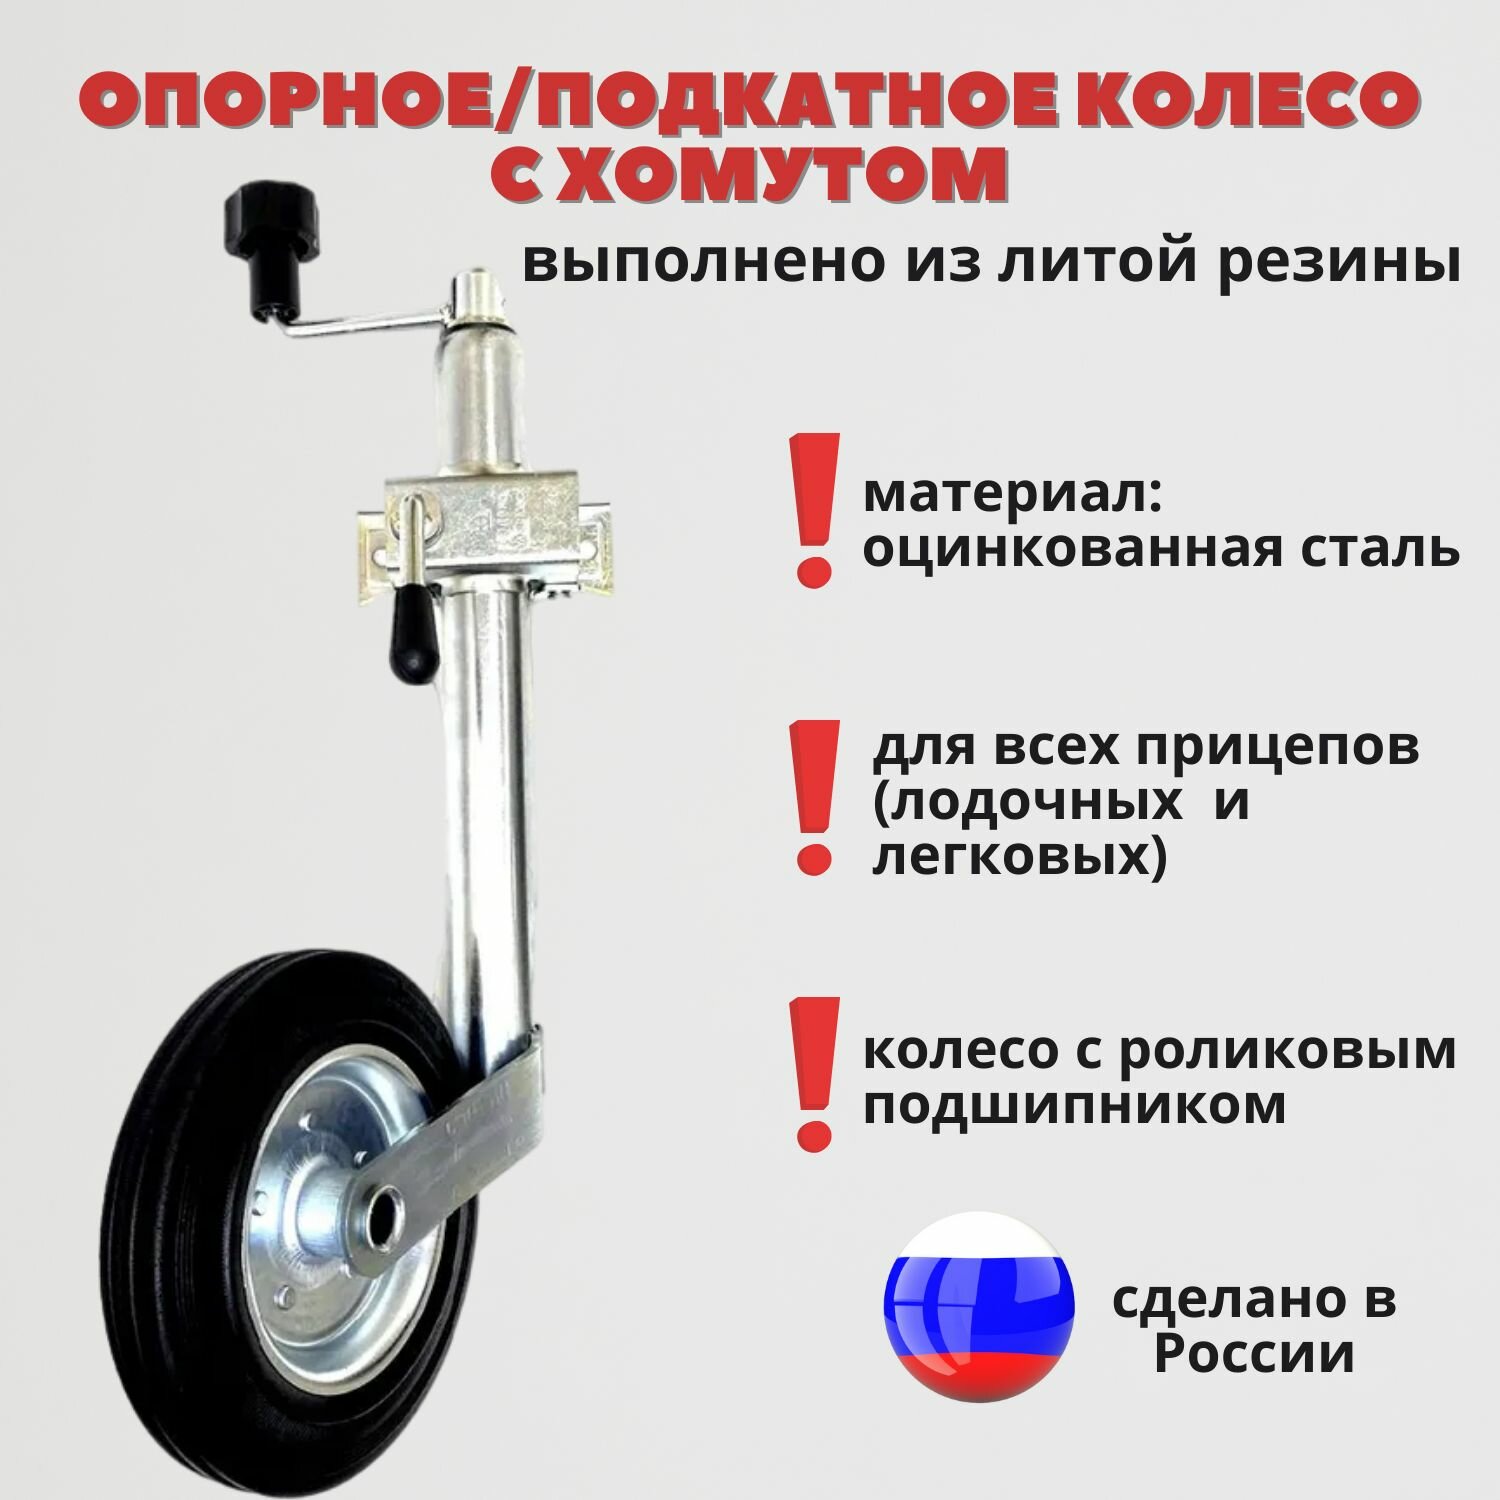 Опорное колесо с хомутом для легкового прицепа (СЭД-ВАД Россия)